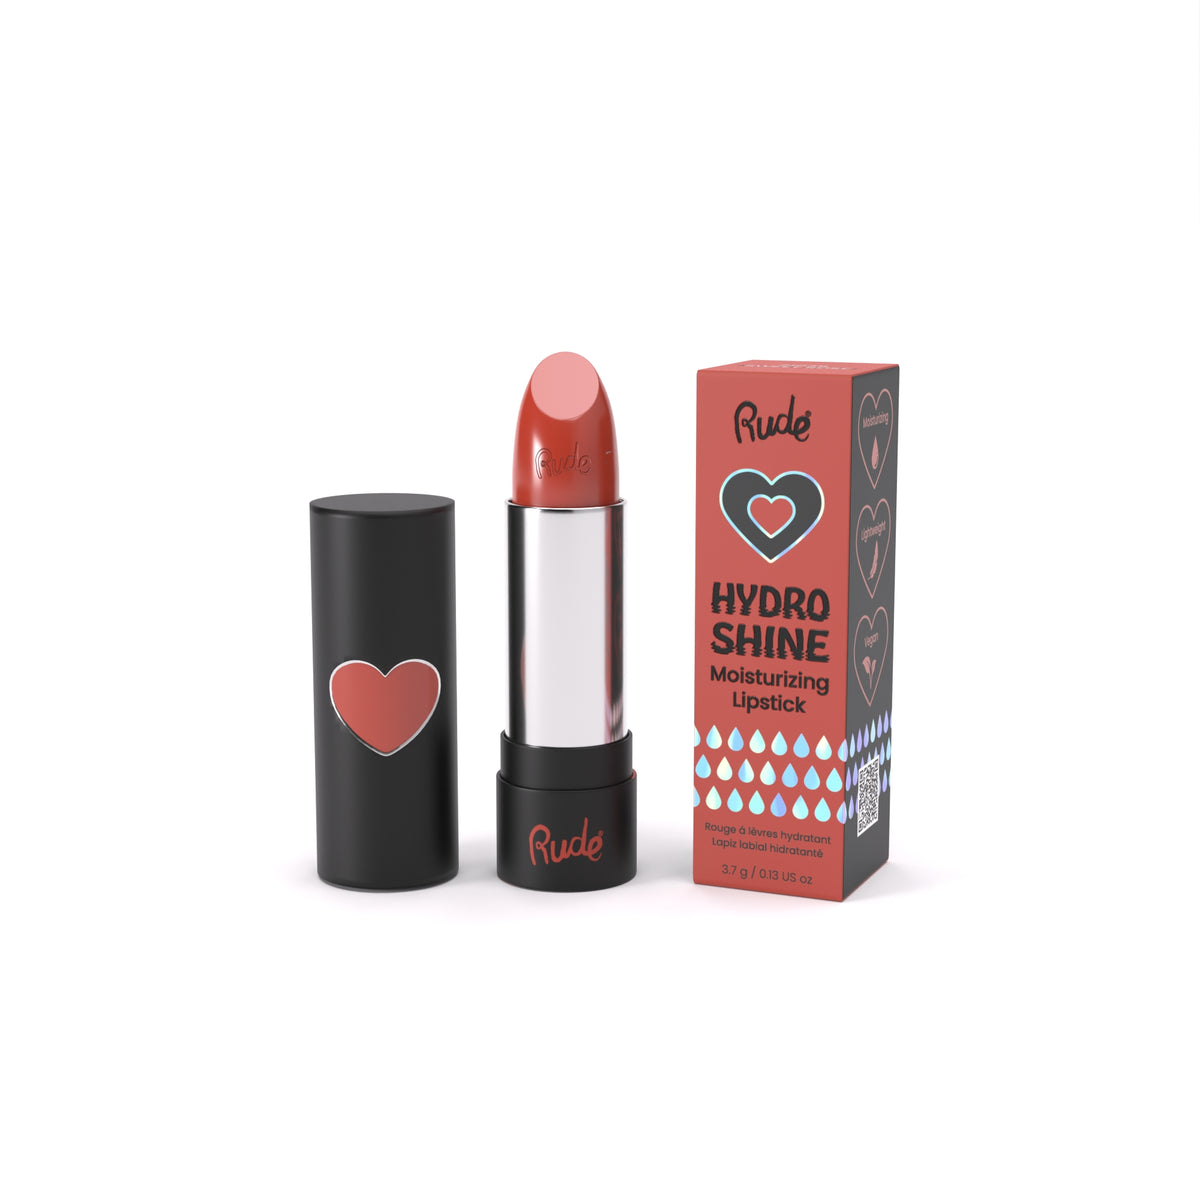 Hydro Shine Moisturizing Lipstick Display Set, 48pcs